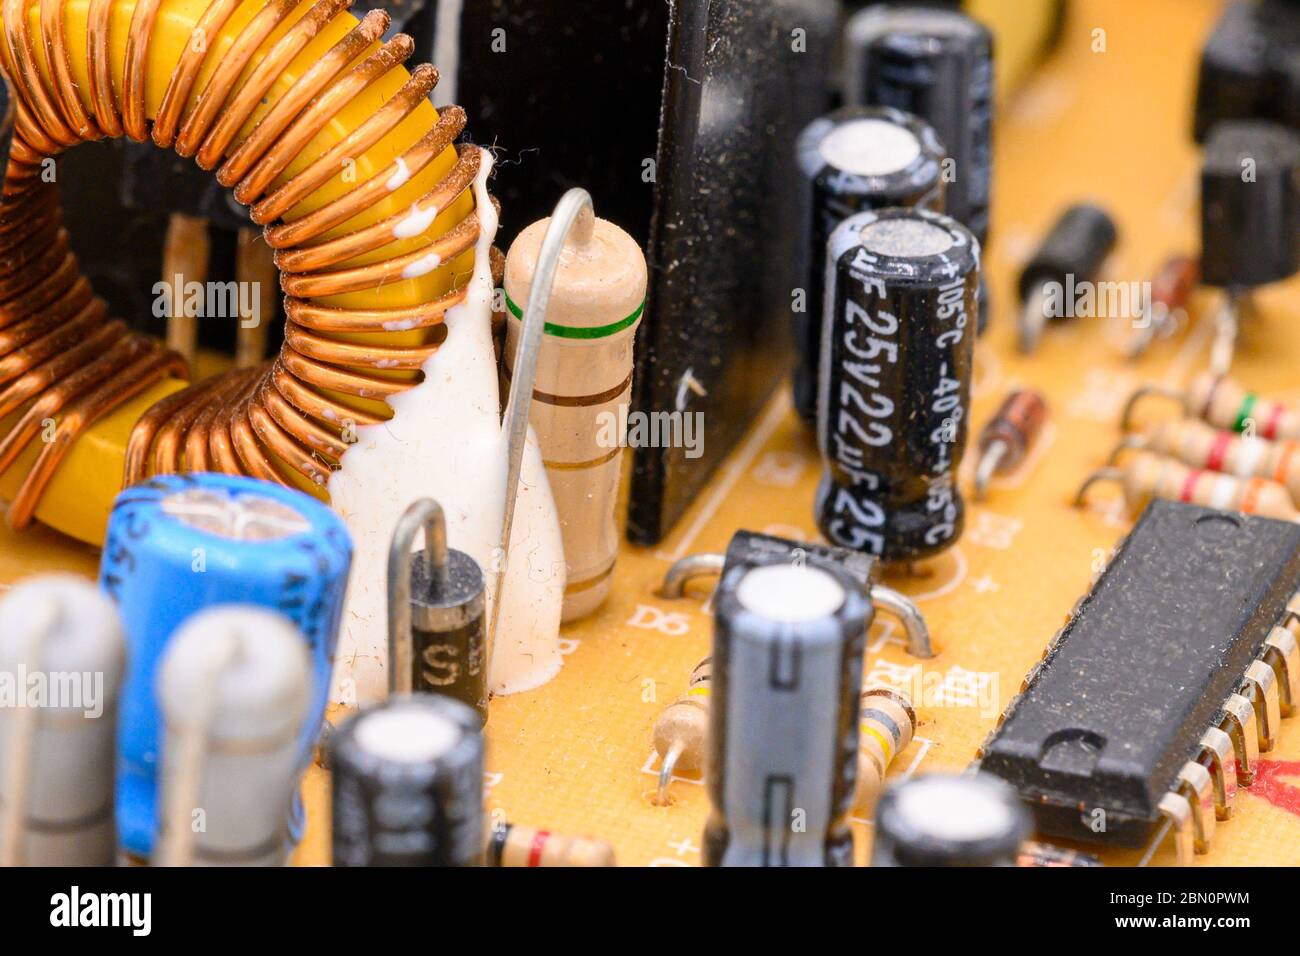 Alte alte alte alte Leiterplatte mit elektronischen Komponenten. Elektronische Spule im Vordergrund. Nahaufnahme mit flachem Freiheitsgrad . Stockfoto